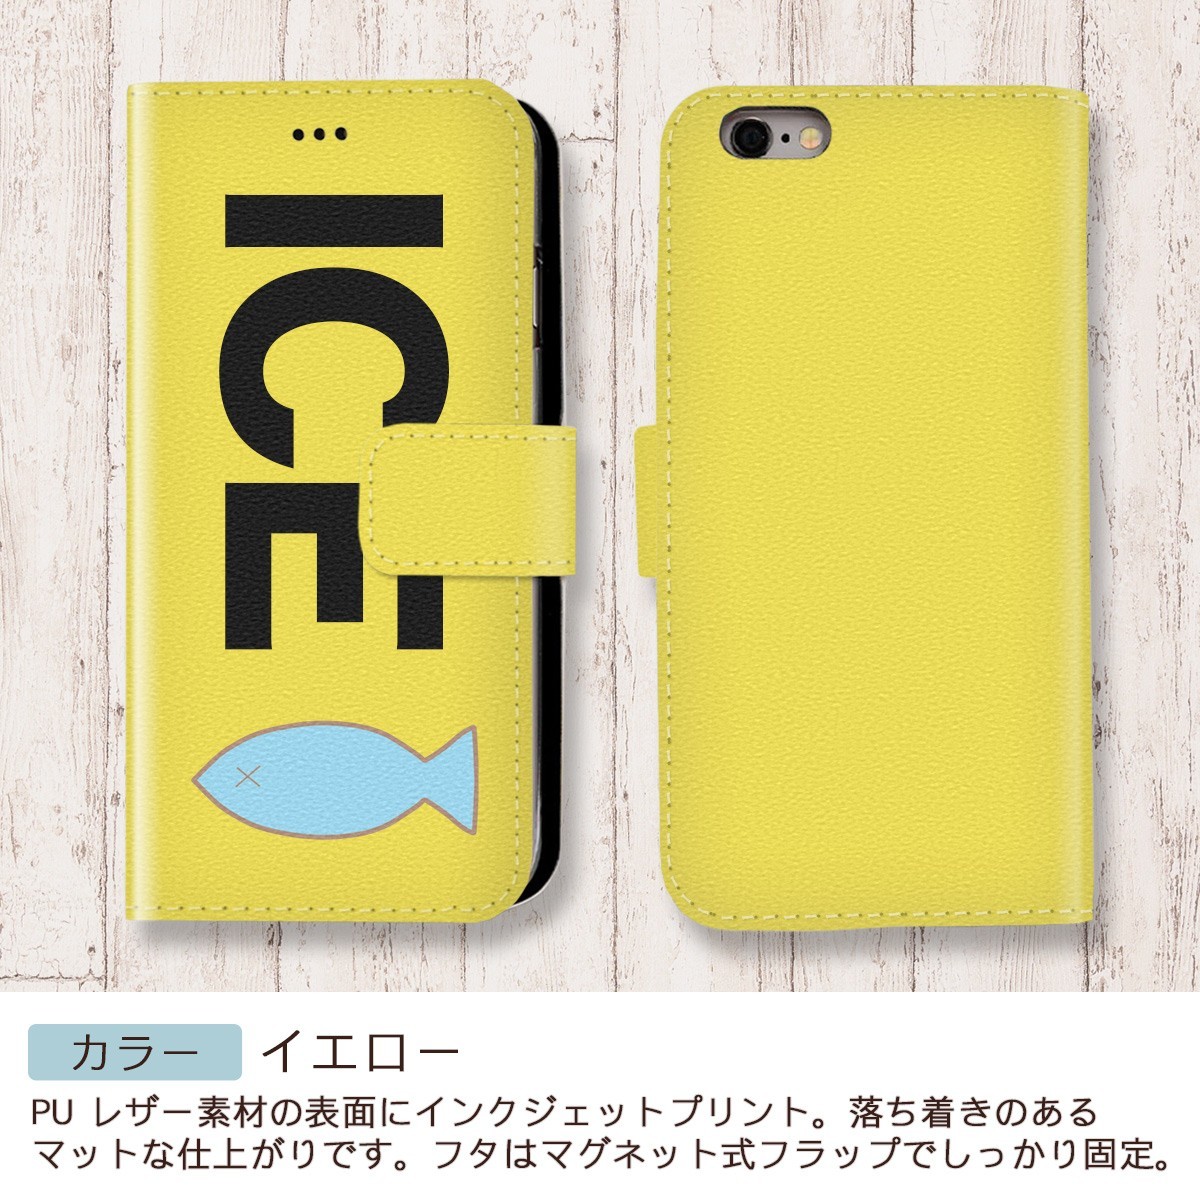 弱っている魚 おもしろ X XSケース ケース iPhone X iPhone XS ケース 手帳型 アイフォン かわいい カッコイイ メンズ レディ_画像7